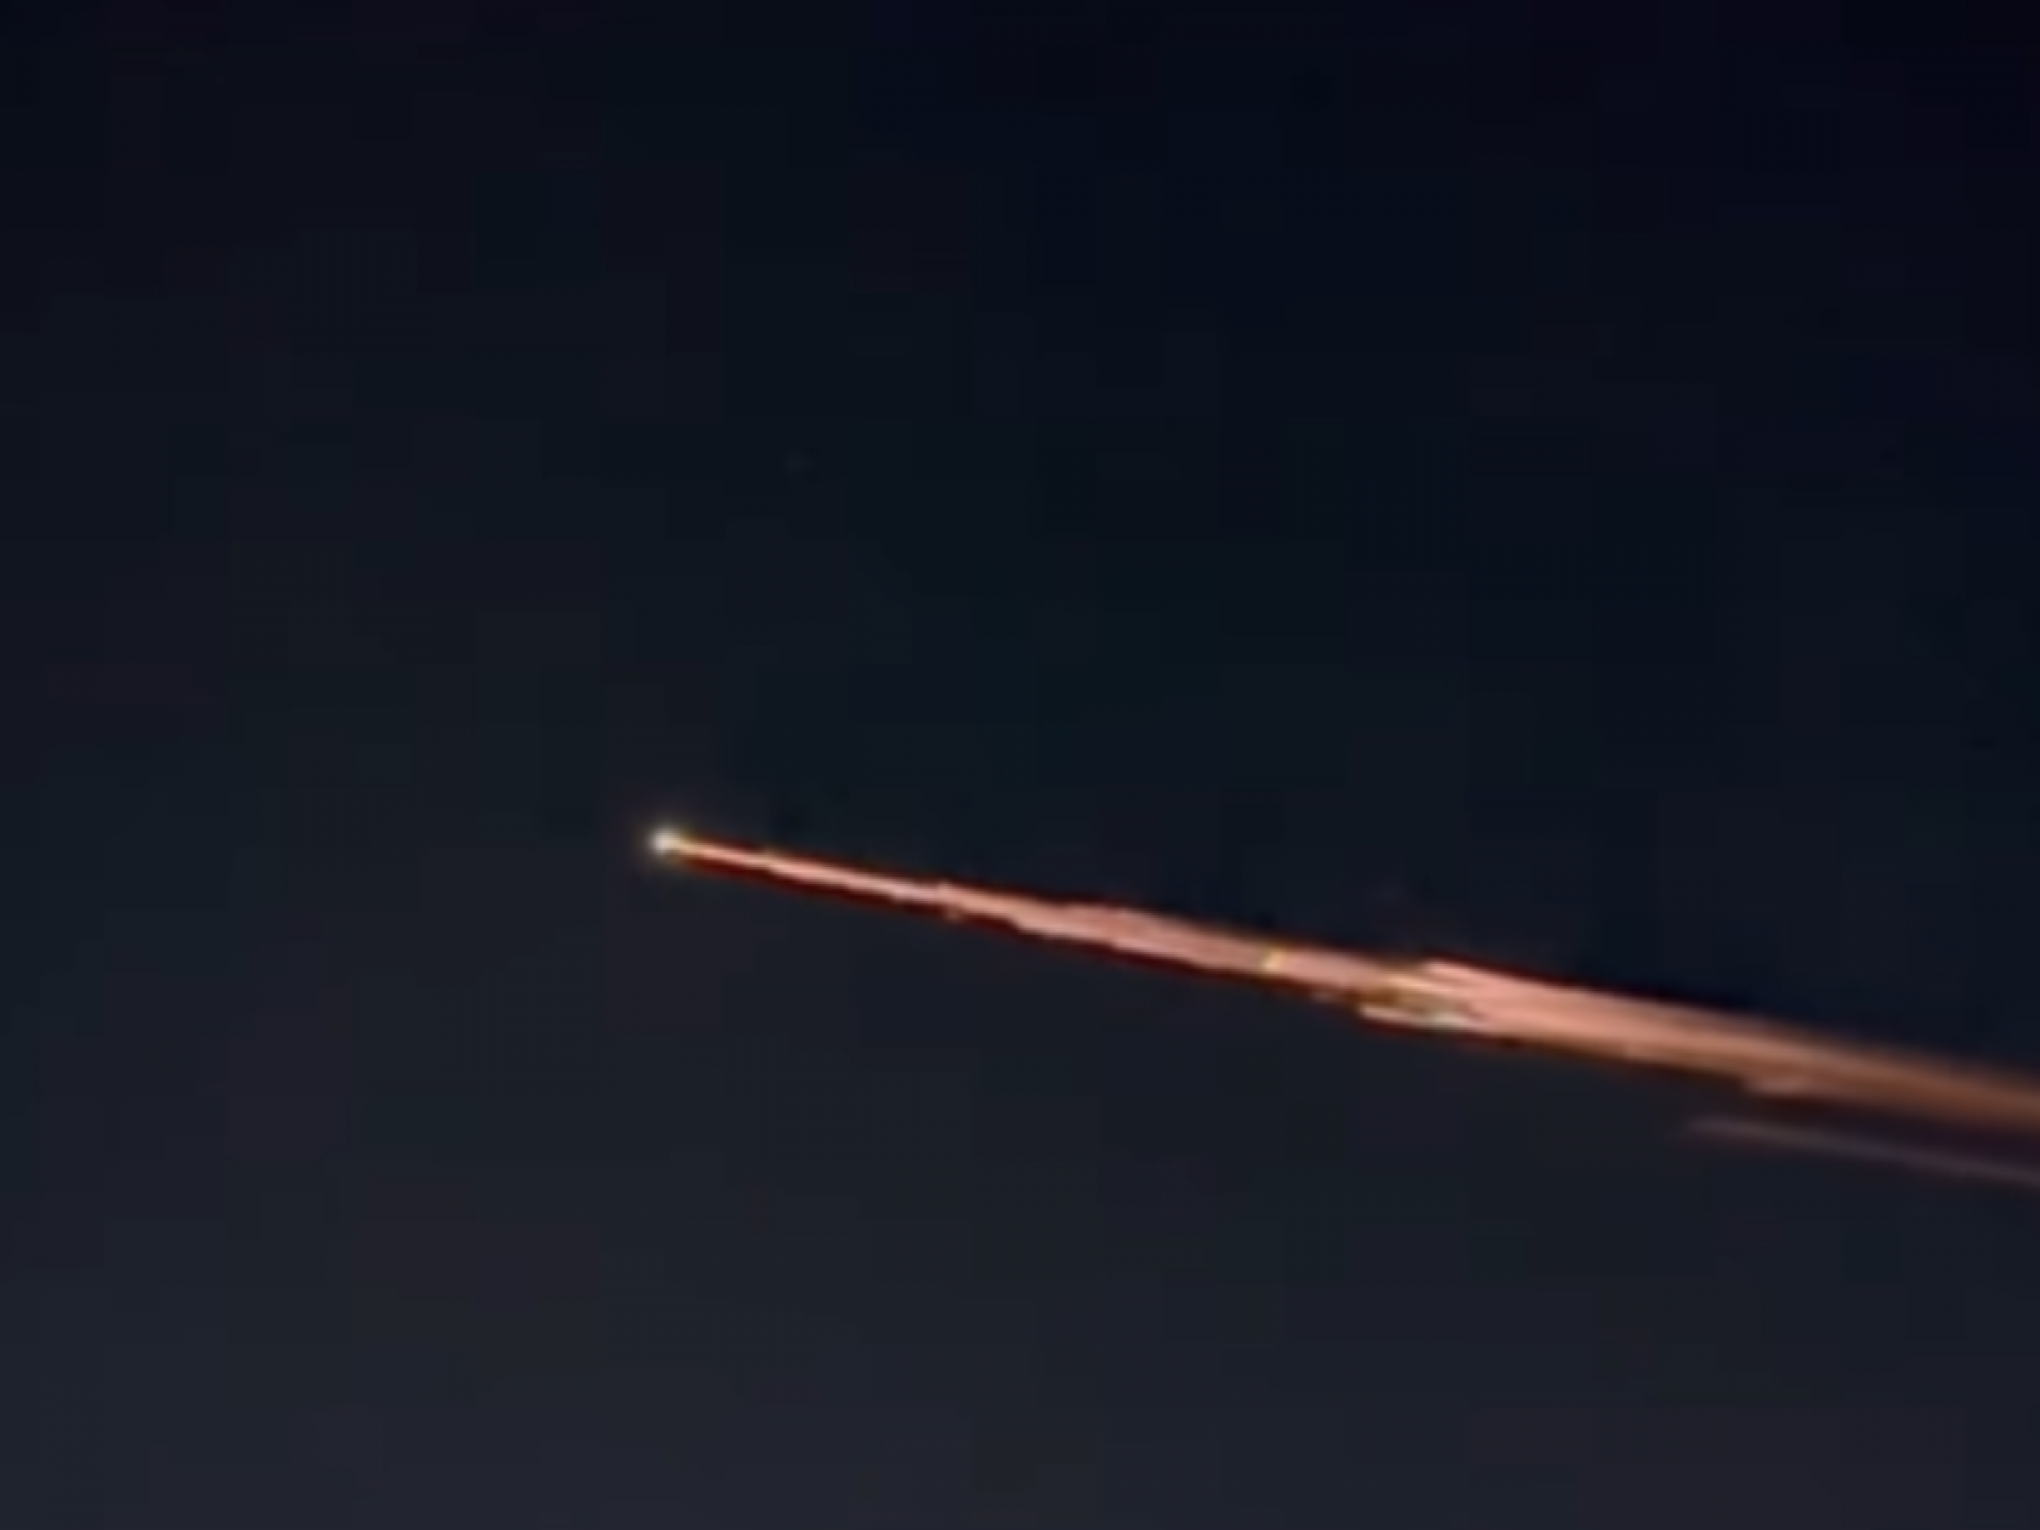 VÍDEO: Luz que parece estrela cadente de fogo é vista no céu do Nordeste; entenda fenômeno